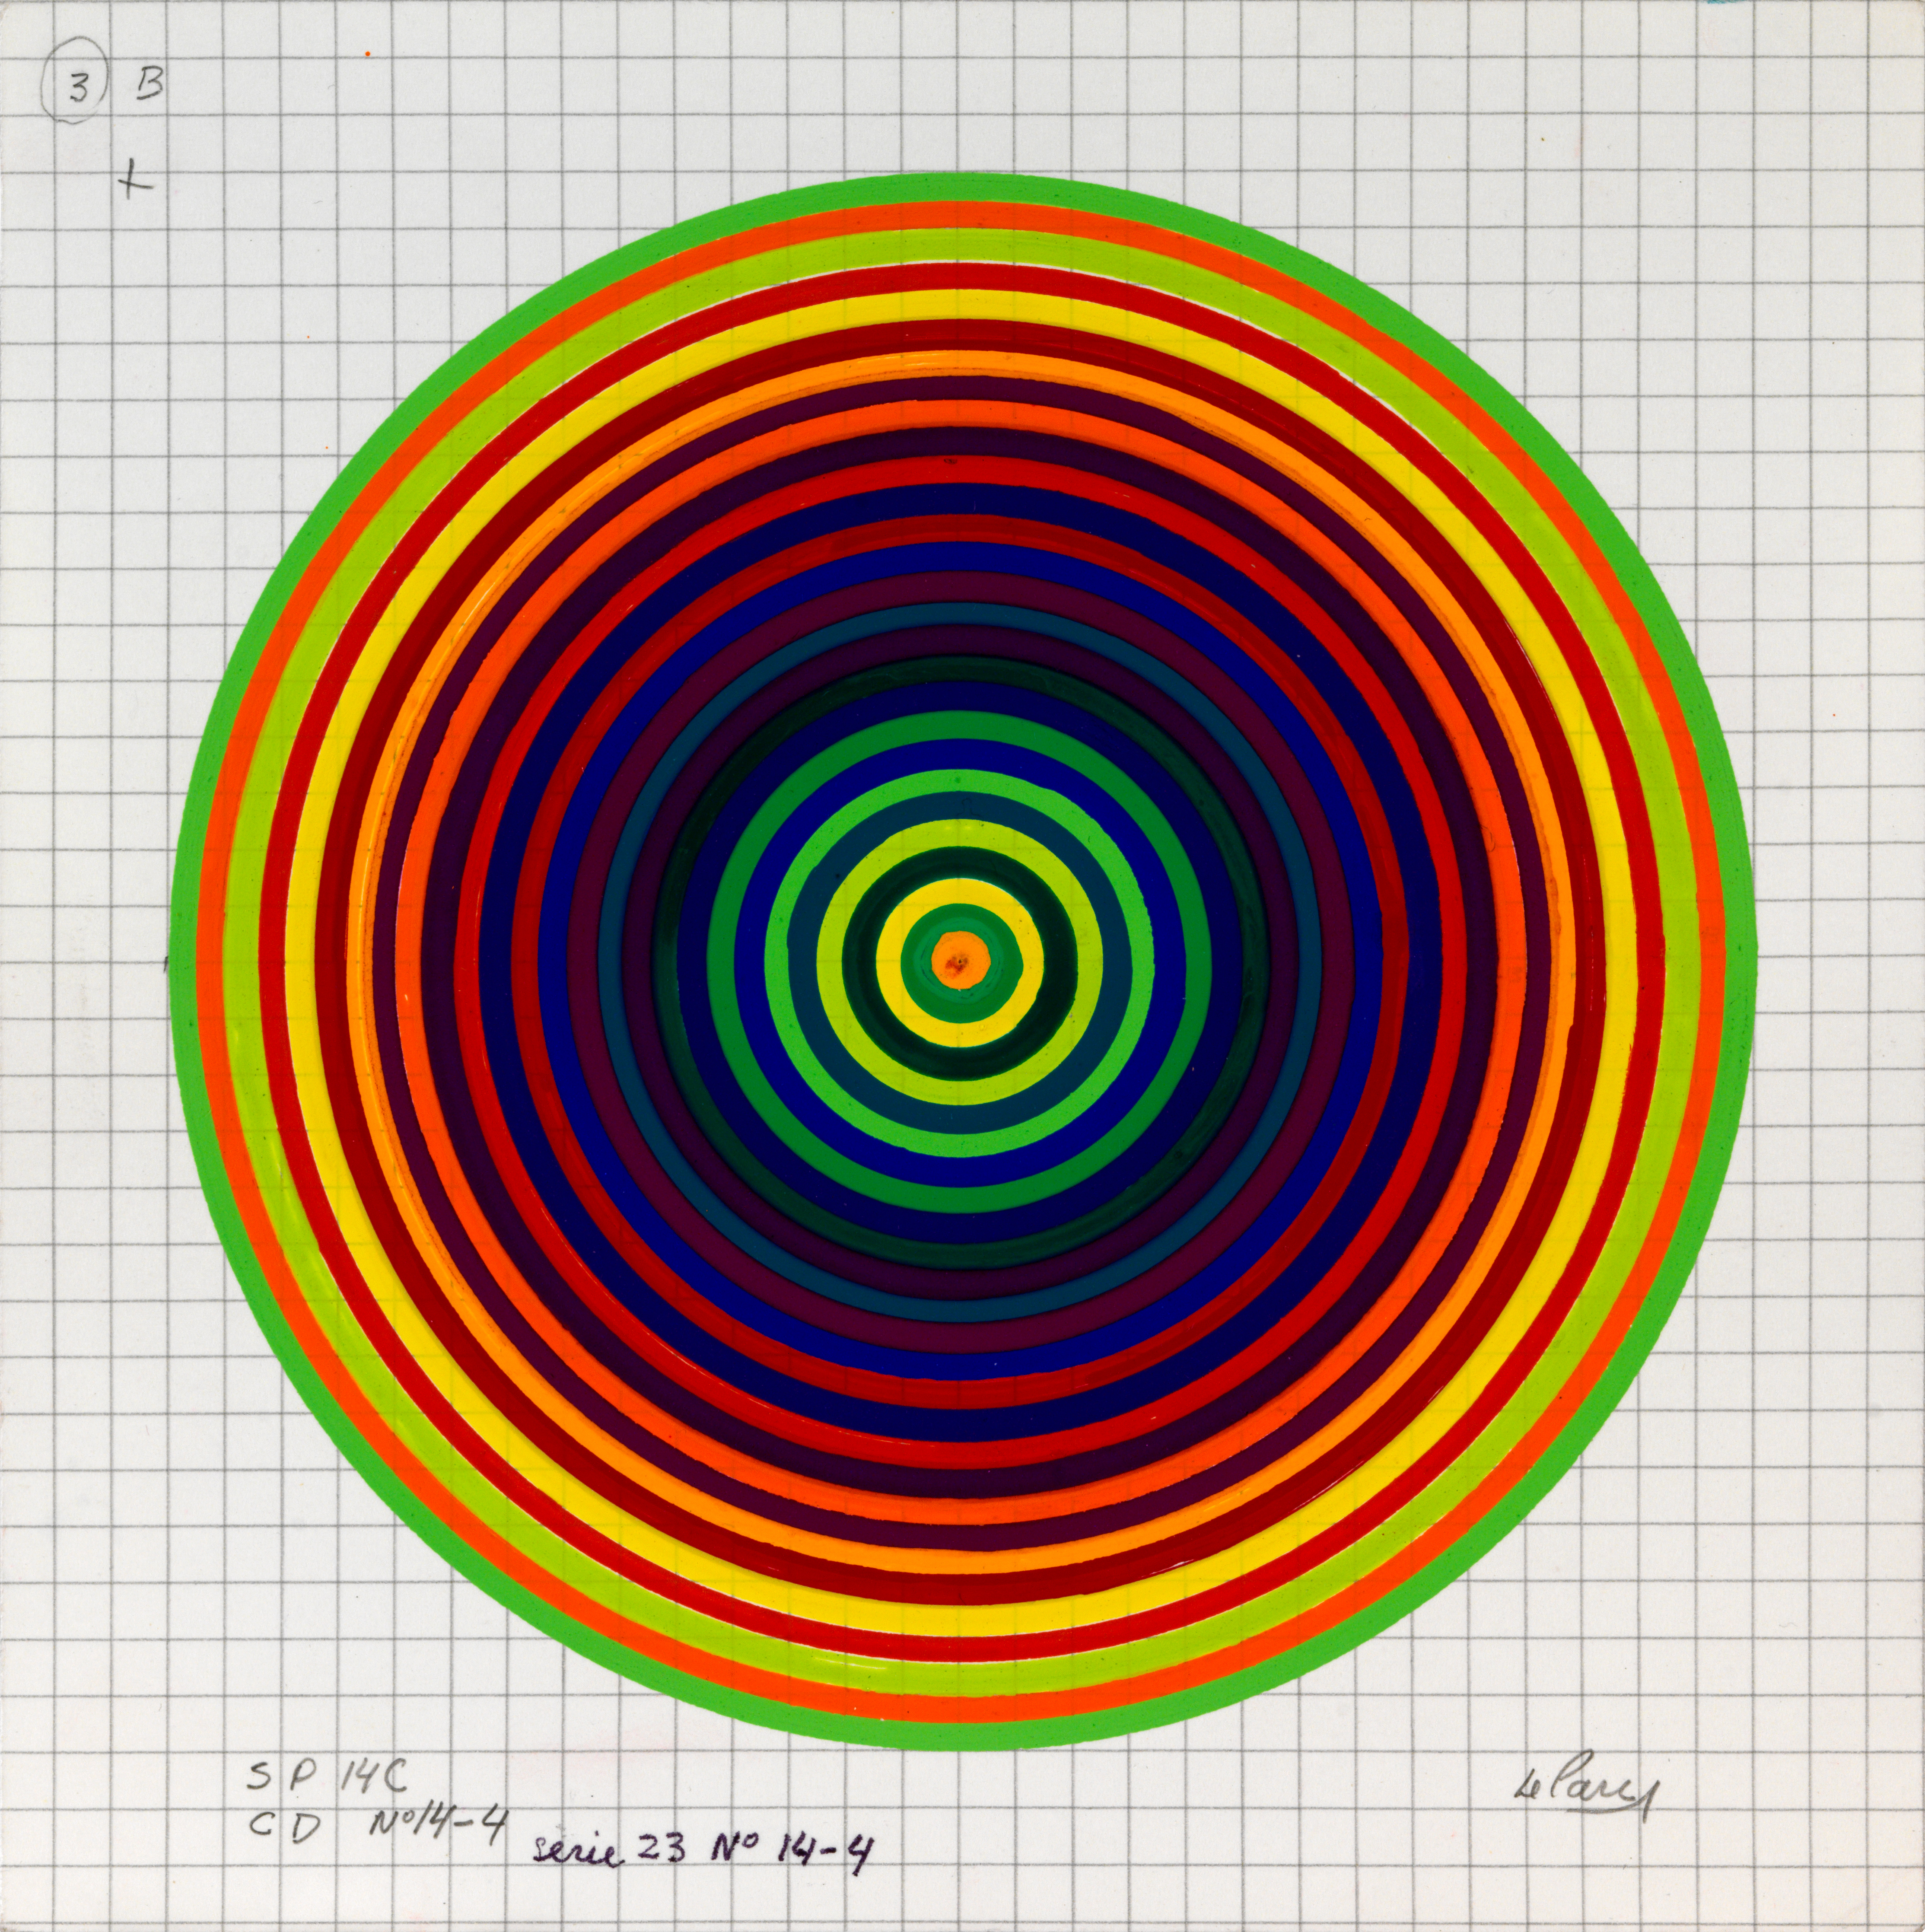 Julio Le Parc, Surface couleur, Cercles, série 23 n°14-4